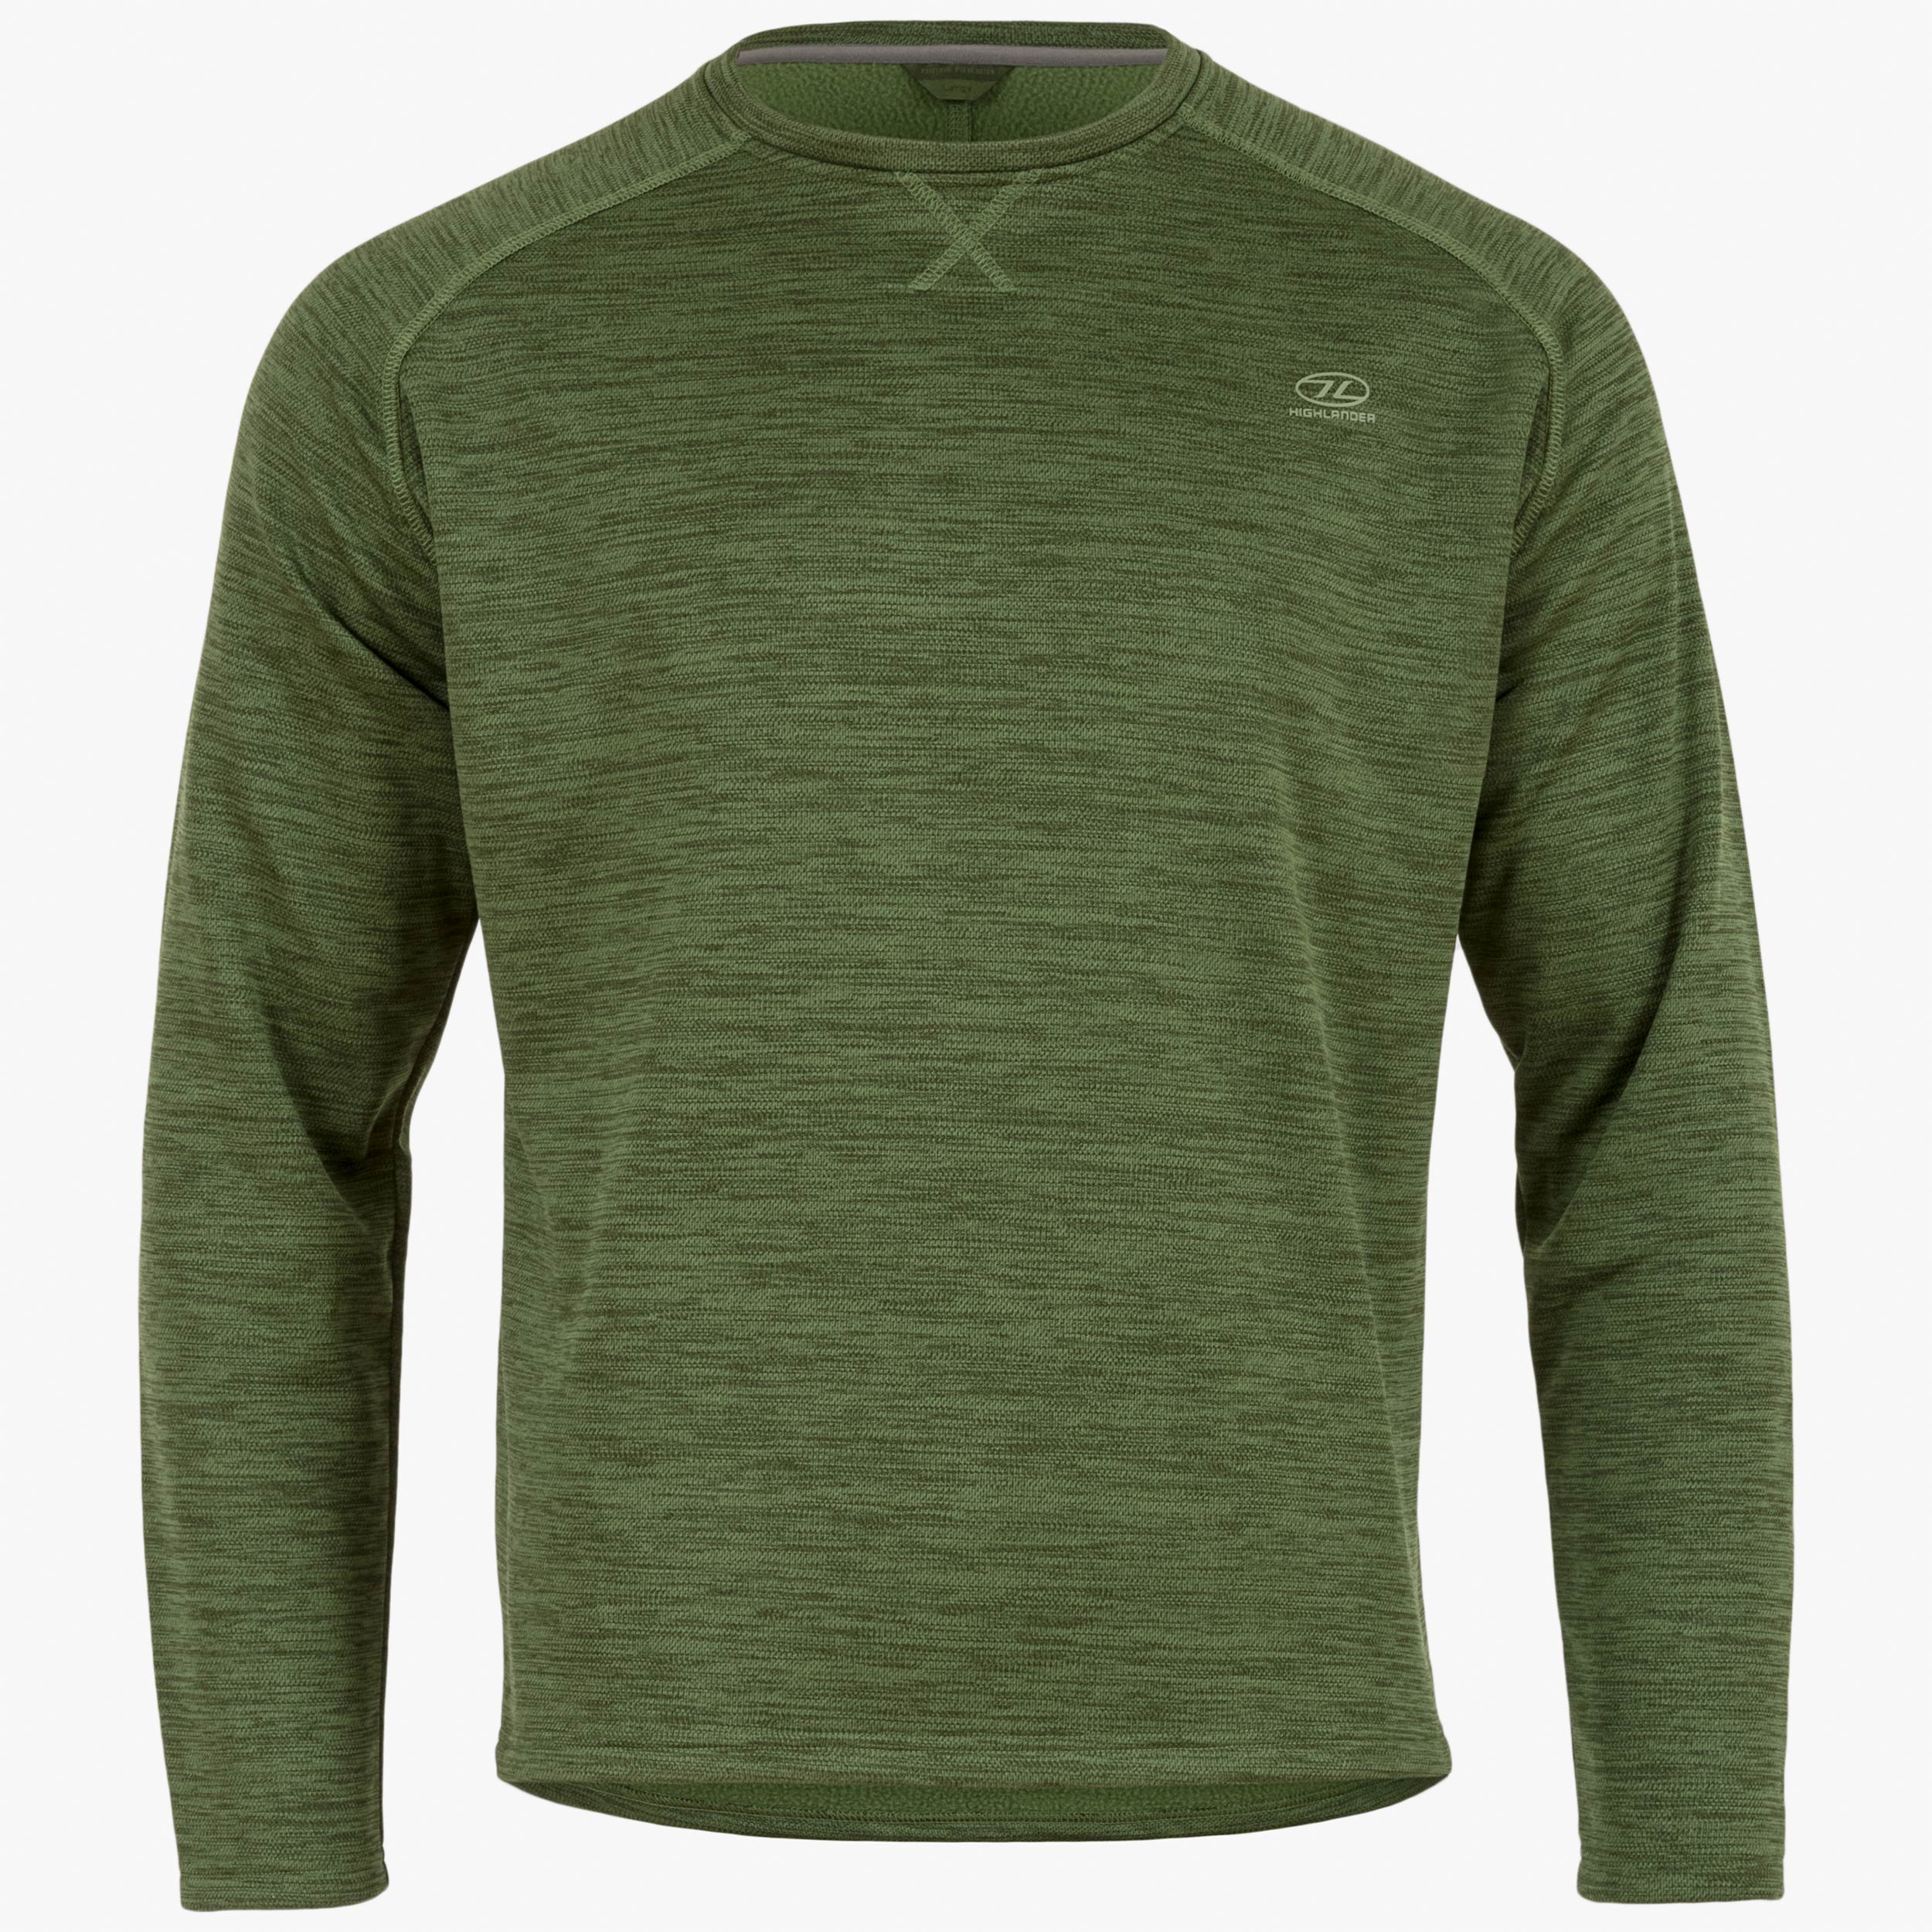 Buy Highlander Black Turtle Neck Sweater for Men Online at Rs.779